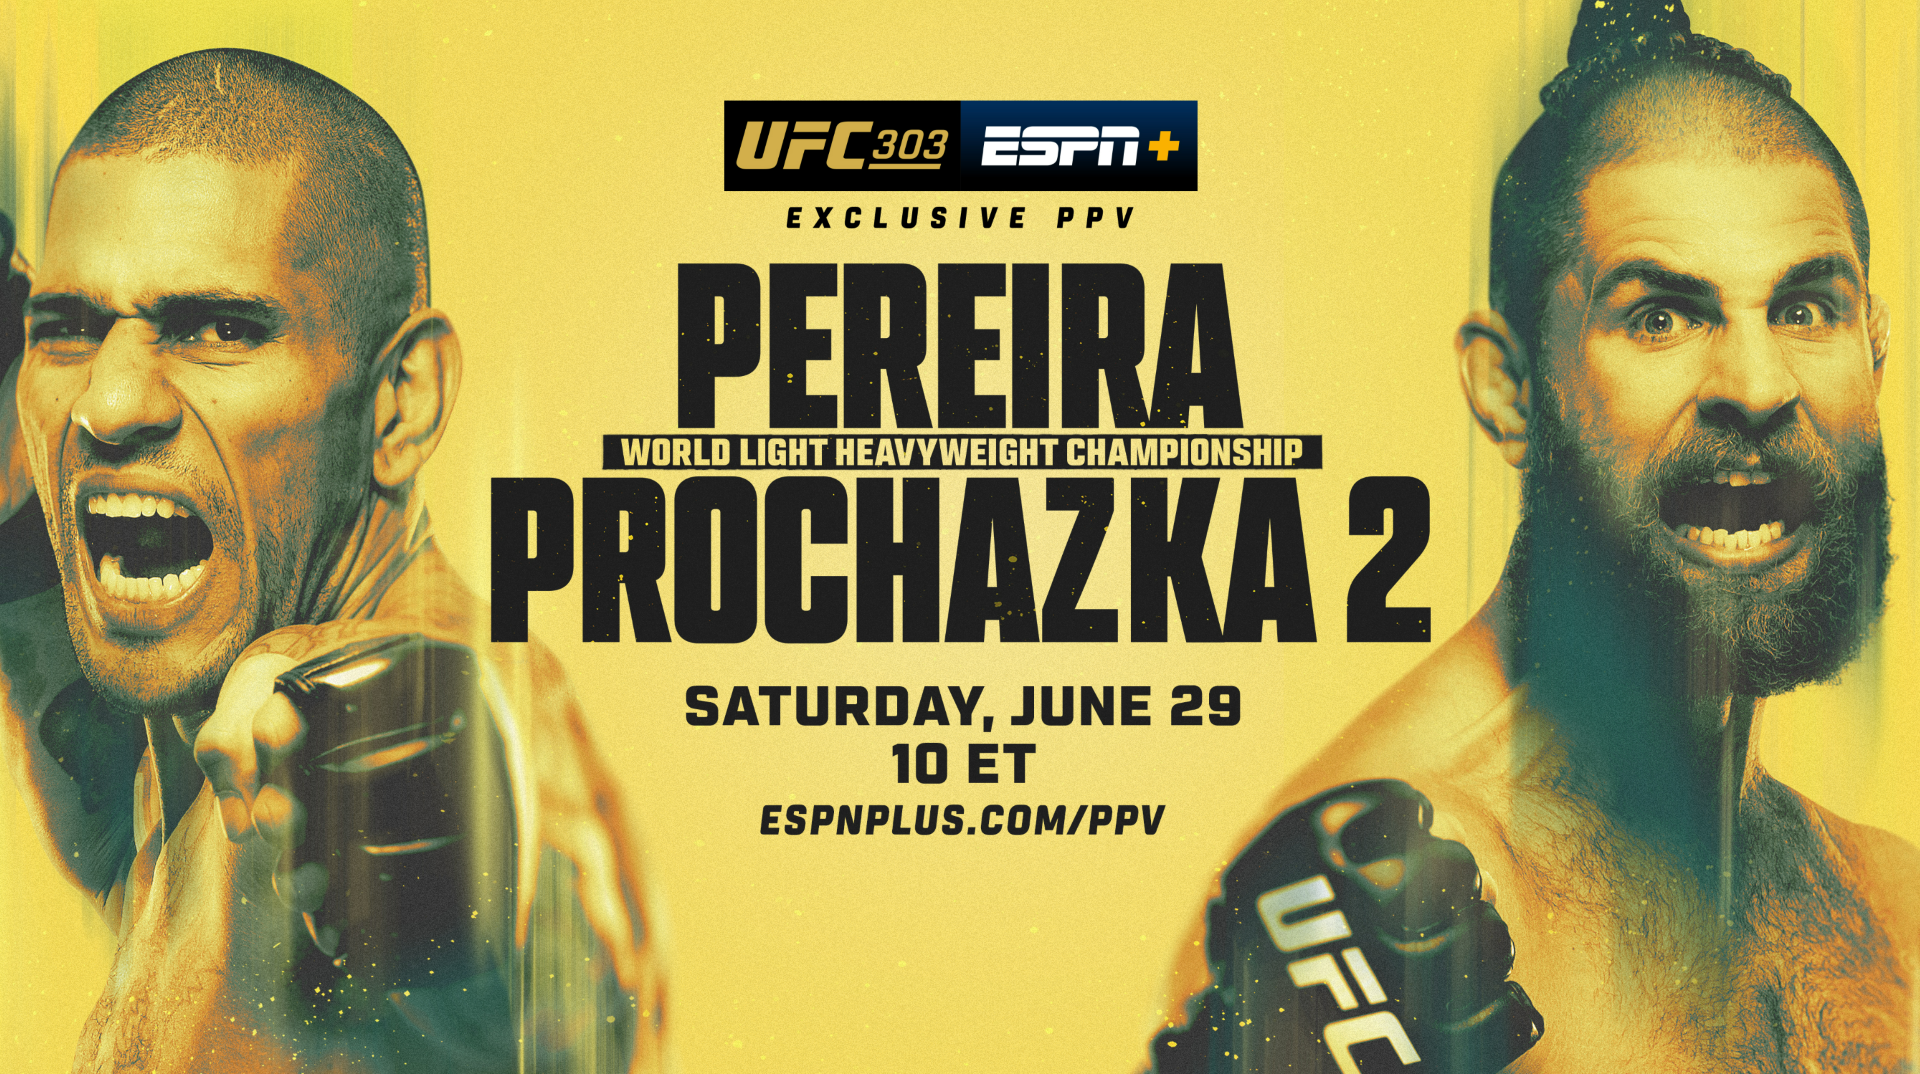 UFC 303: Реванш Перейры против Прохазки — достойная замена возвращению Конора